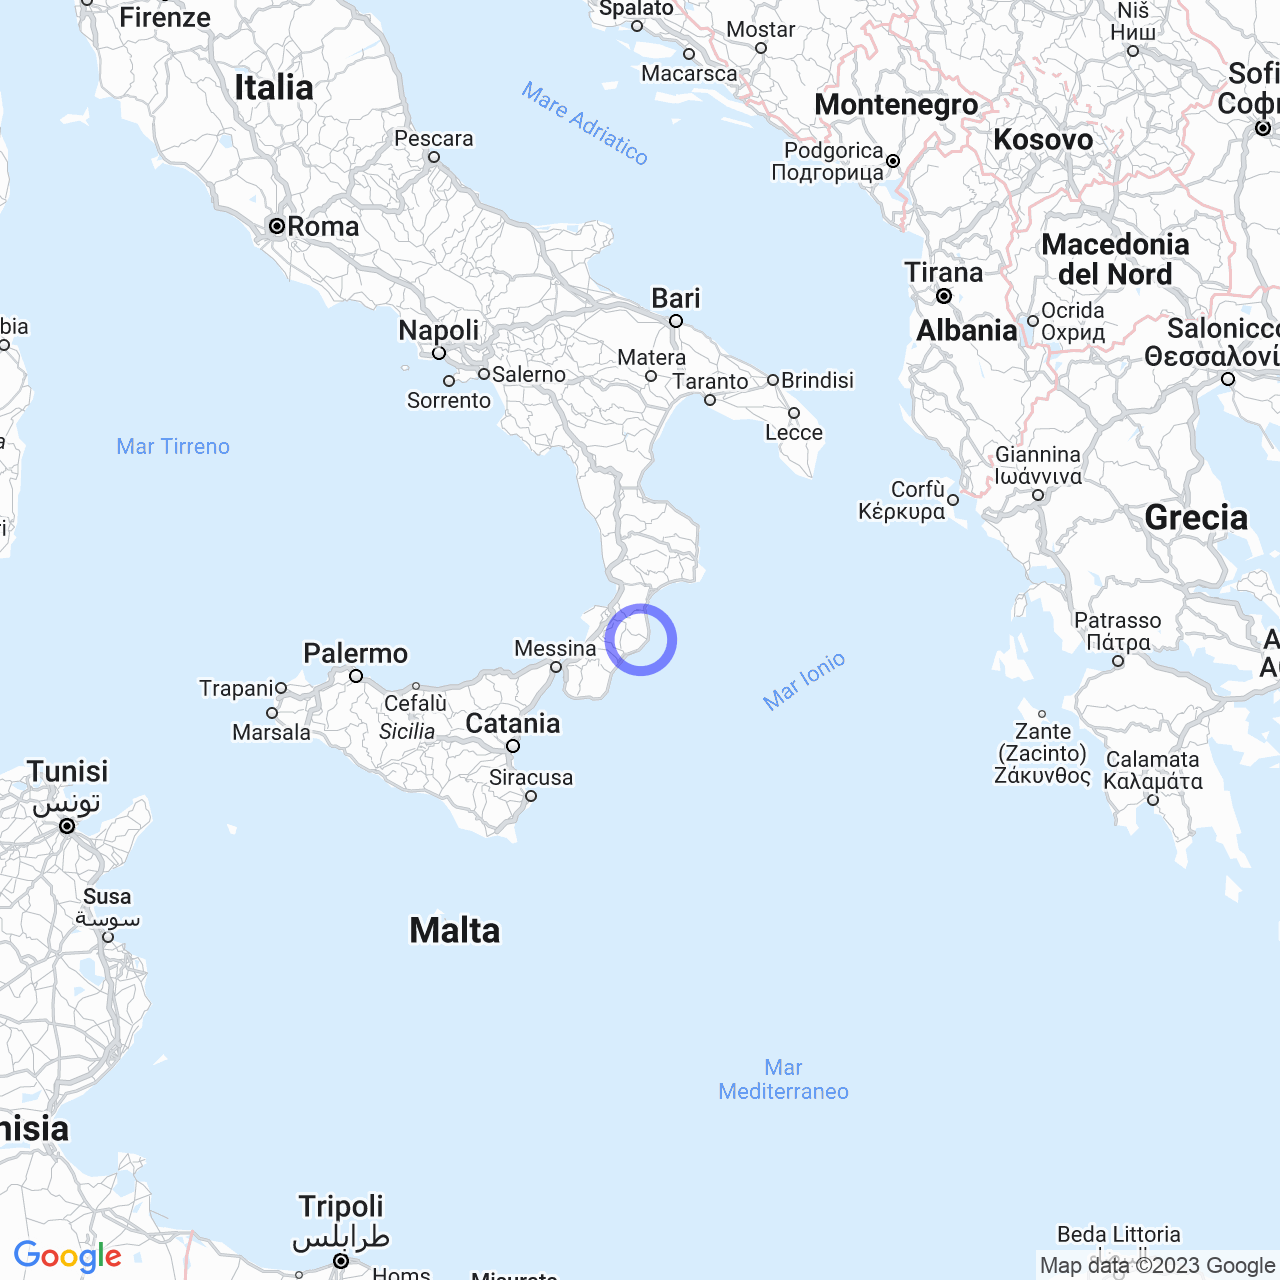 'Ndrangheta in the province of Reggio Calabria: subdivisions, structure, and locations.